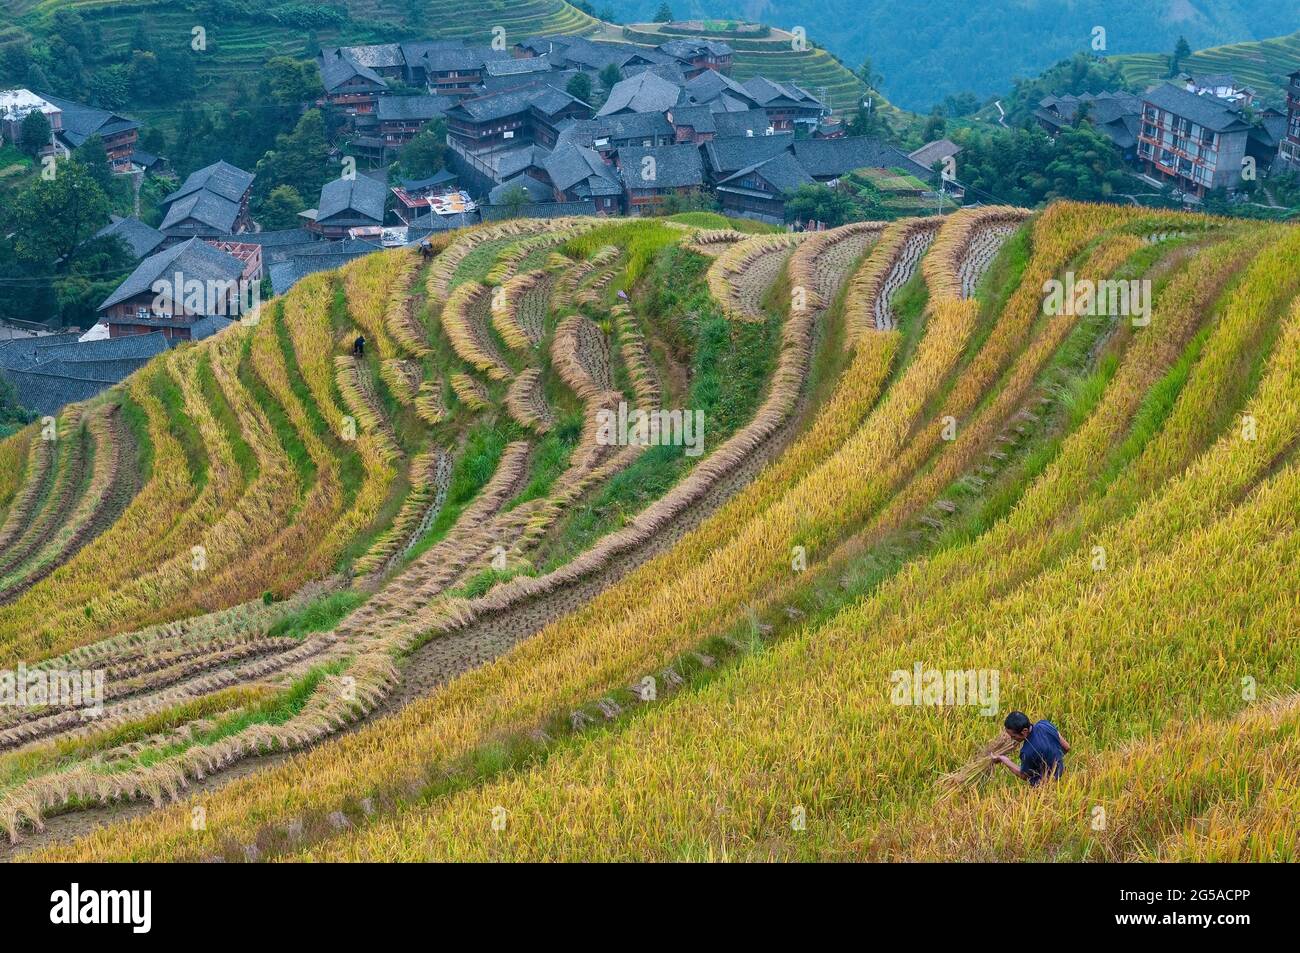 Homme chinois de la tribu indigène de Zhuang qui coupe des plants de riz dans la récolte de riz à Longsheng Ping un village rizières en terrasses, province de Guangxi, Chine. Banque D'Images